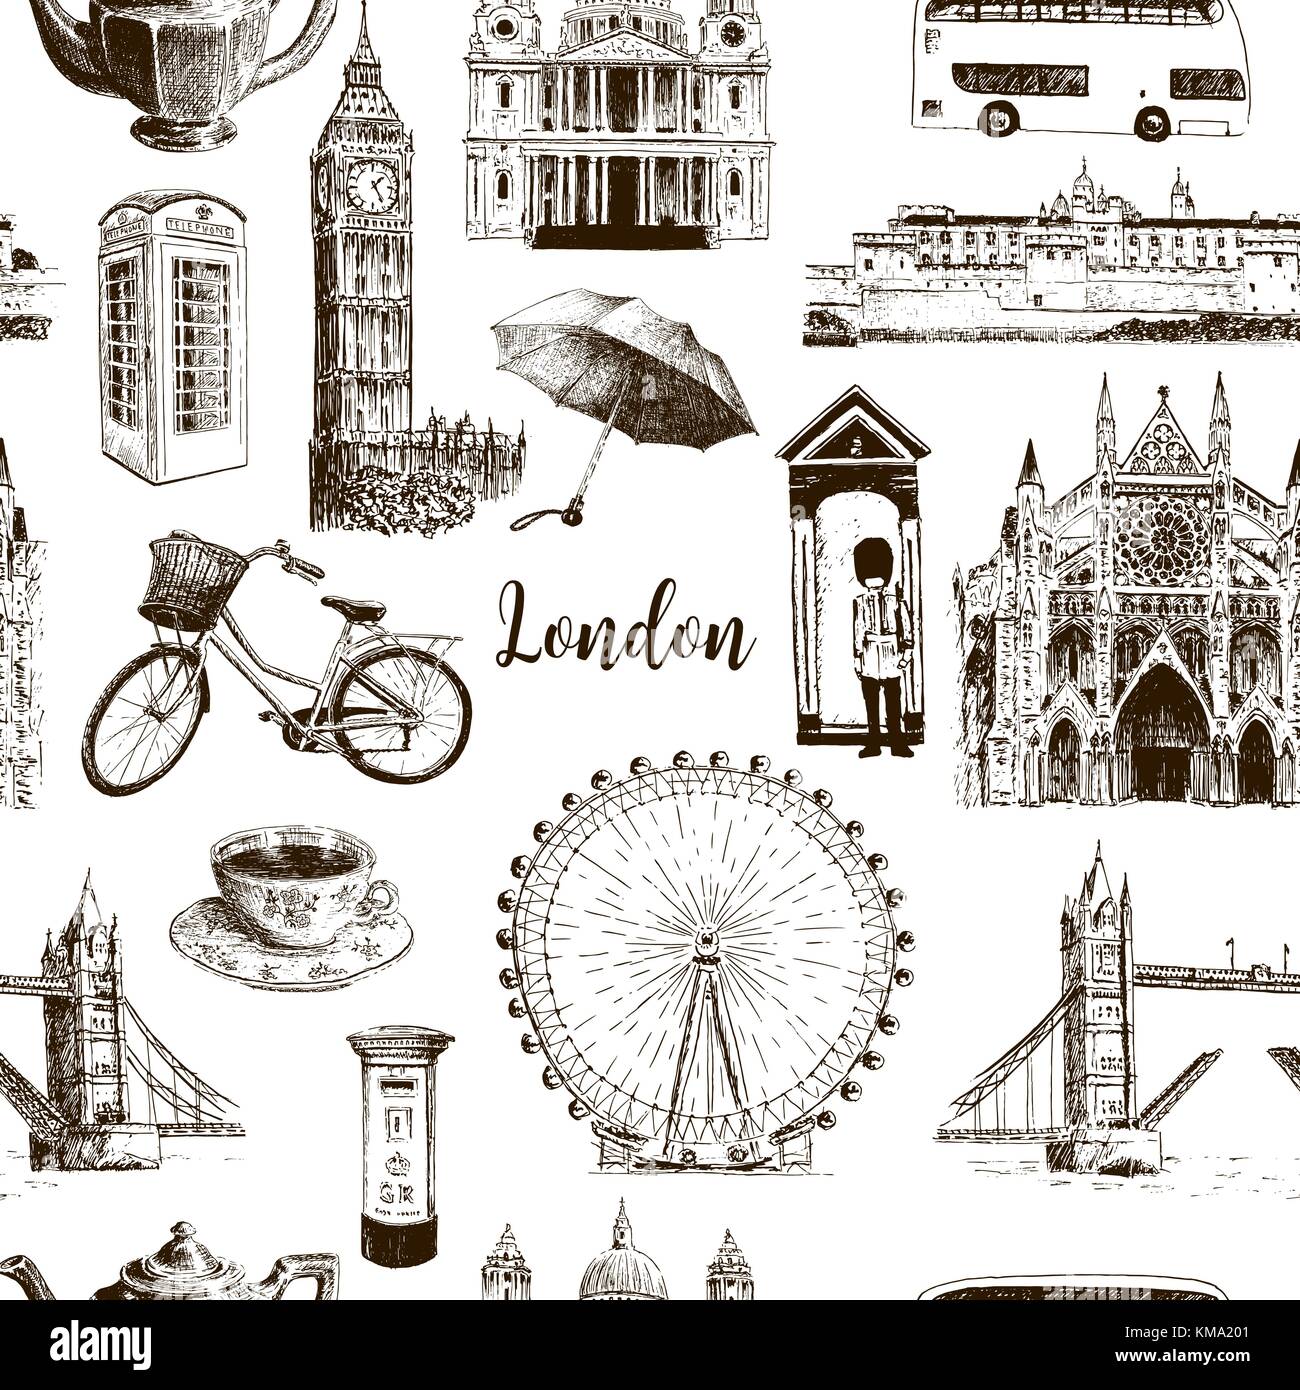 London architektonischen Symbolen Hand gezeichnet Vektor nahtlose Muster Skizze. Big Ben, die Tower Bridge, roter Bus, Briefkasten, CALL-Box. St. Paul Kathedrale Stock Vektor